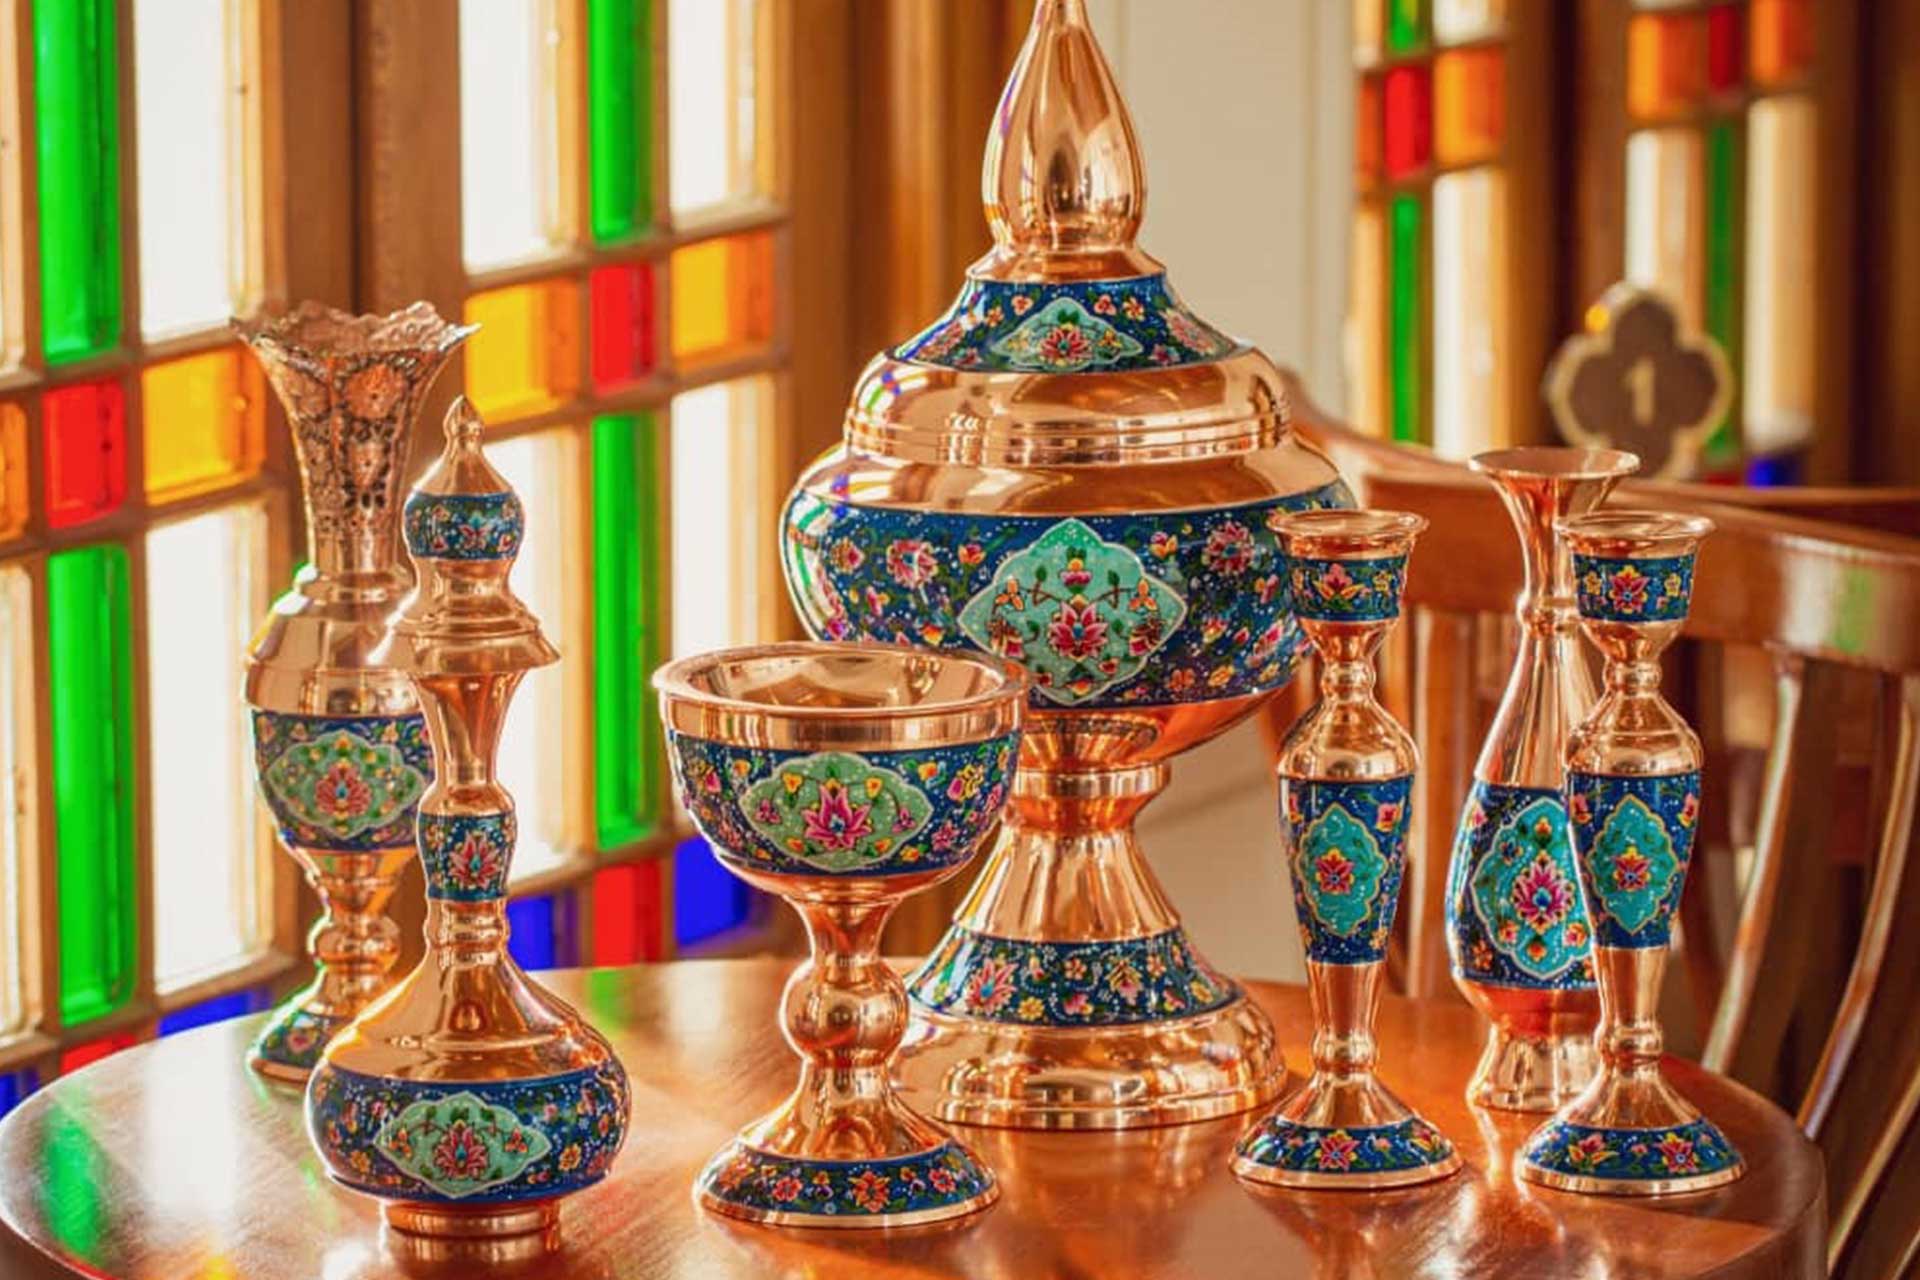 جایگاه هنر مس و پرداز در صنایع دستی ایران